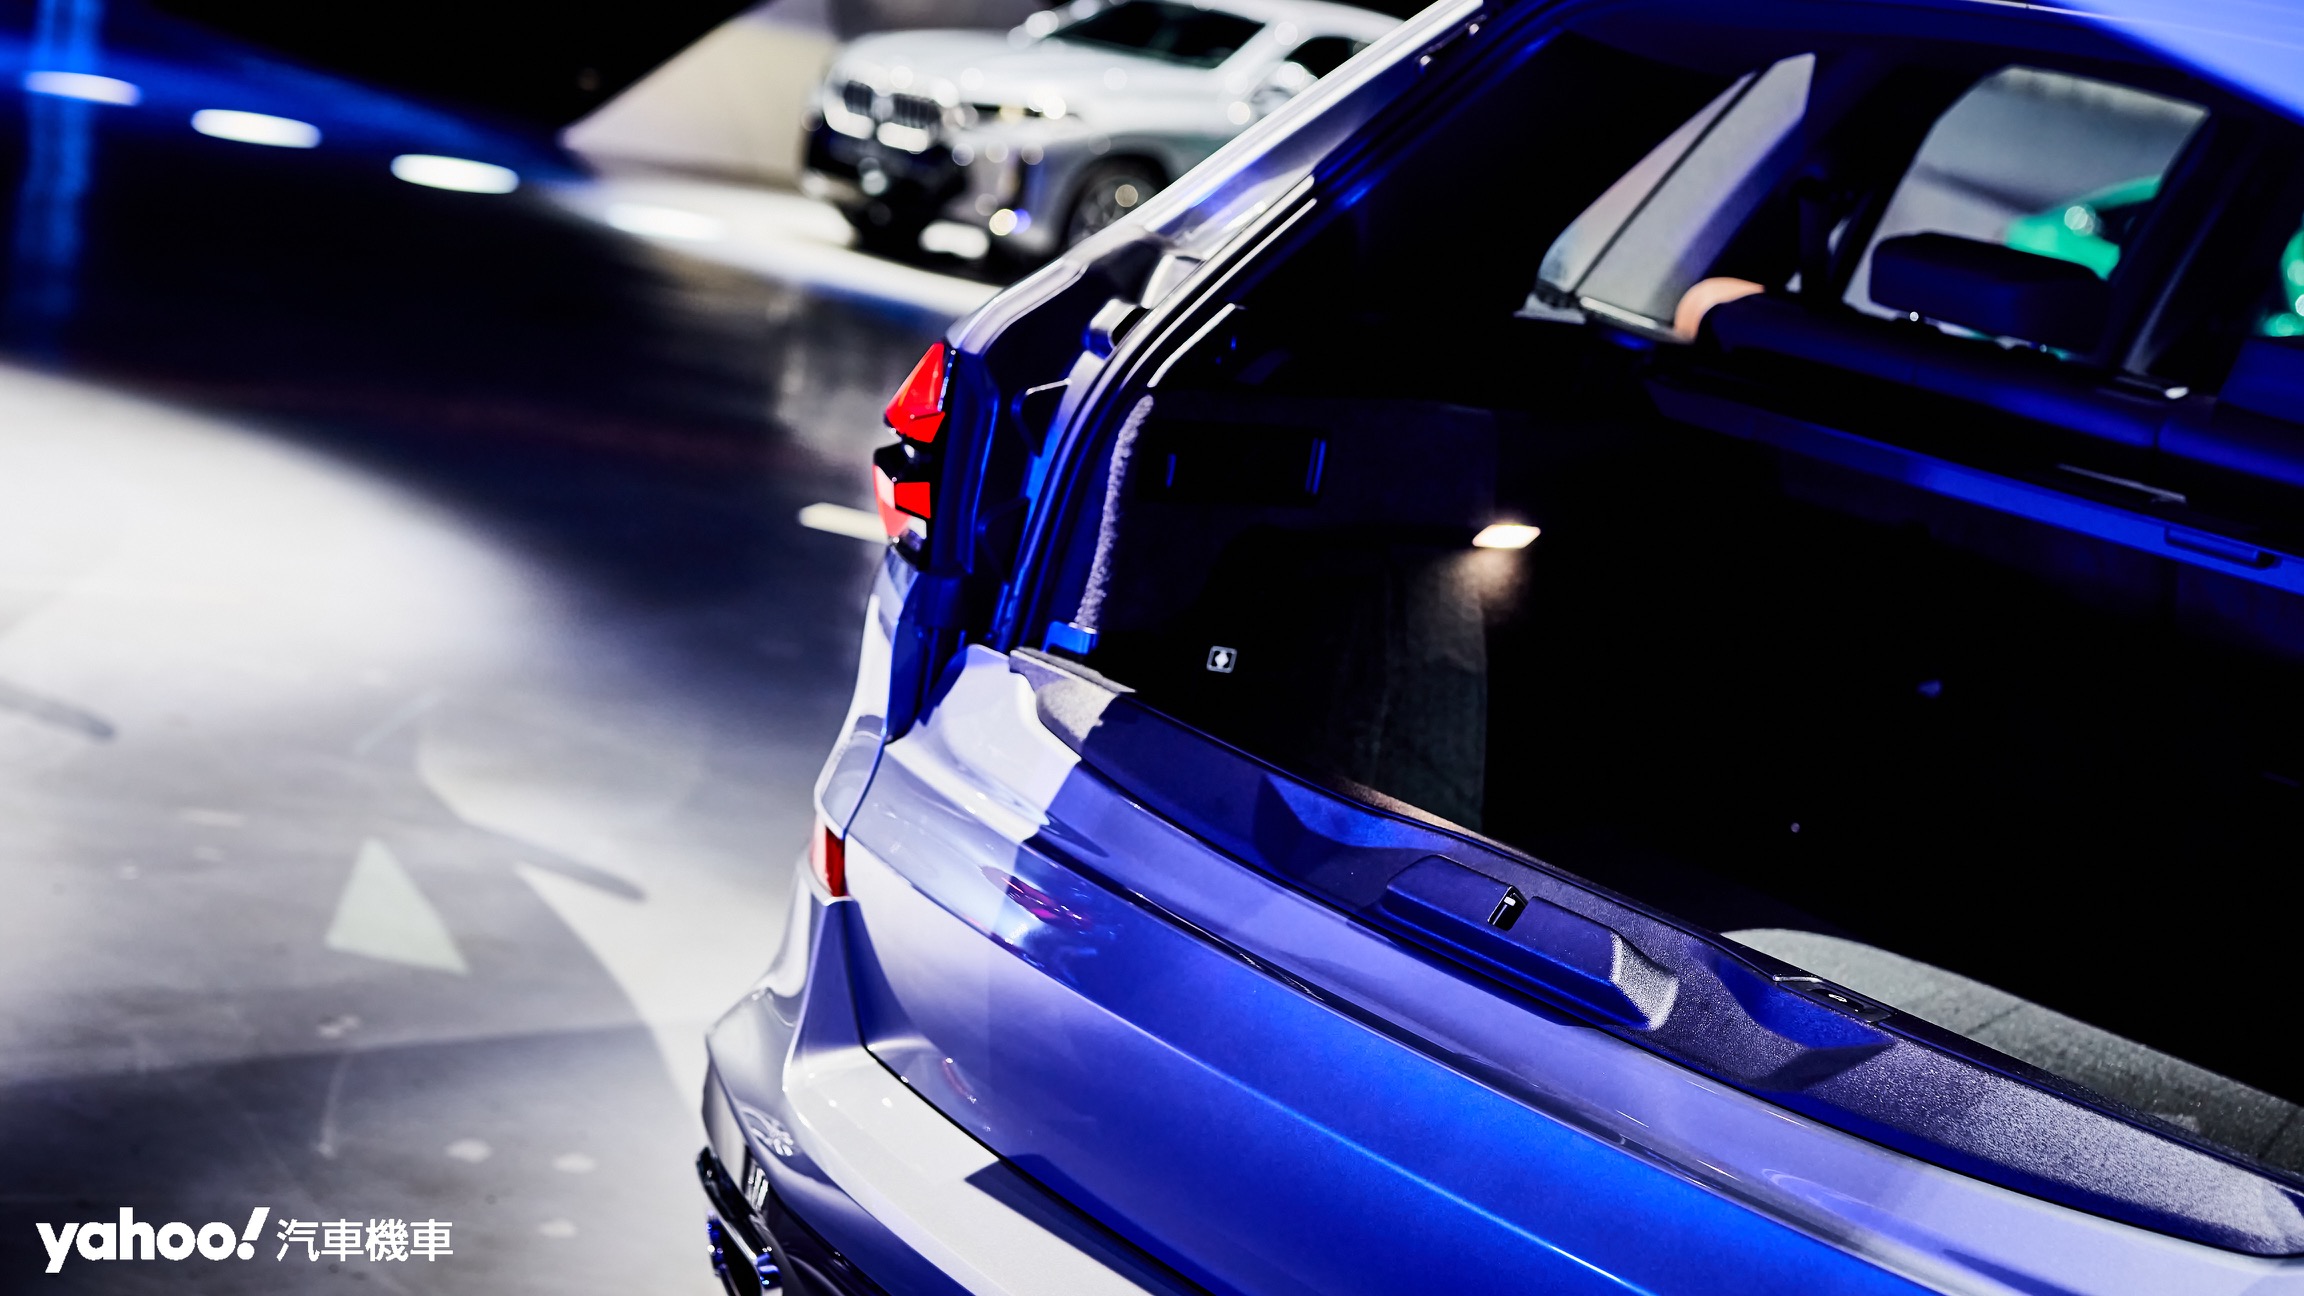 BMW X5為中大型SUV架構而更重視空間機能，所採用的上下雙開式尾門設計一直是相當受到歡迎的重點配備。